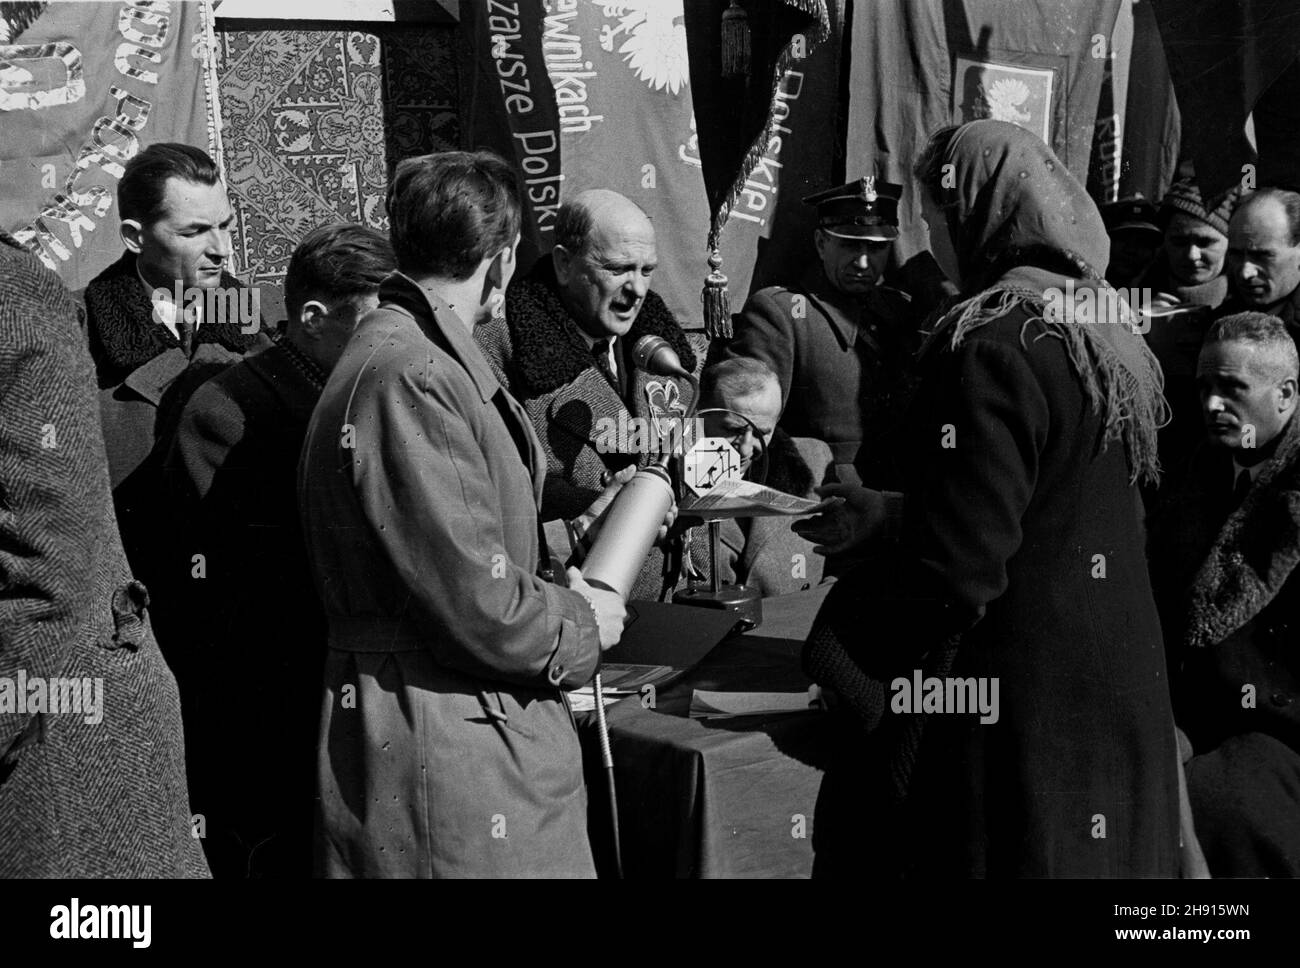 £agiewniki, 1947-03-09. Uroczyste nadanie osadnikom tytu³ów w³asnoœci ziemi. Nz. m.in. z lewej Stanis³aw Radkiewicz, w œrodku (przemiawia) W³adys³aw Kowalski, obok siedzi Zenon Kliszko. bb/gr  PAP      Lagiewniki, March 9, 1947. Settlers receive land titles. Pictured: Stanislaw Radkiewicz (left), Wladyslaw Kowalski speaks (centre), next to him Zenon Kliszko (sitting).  bb/gr  PAP Stock Photo